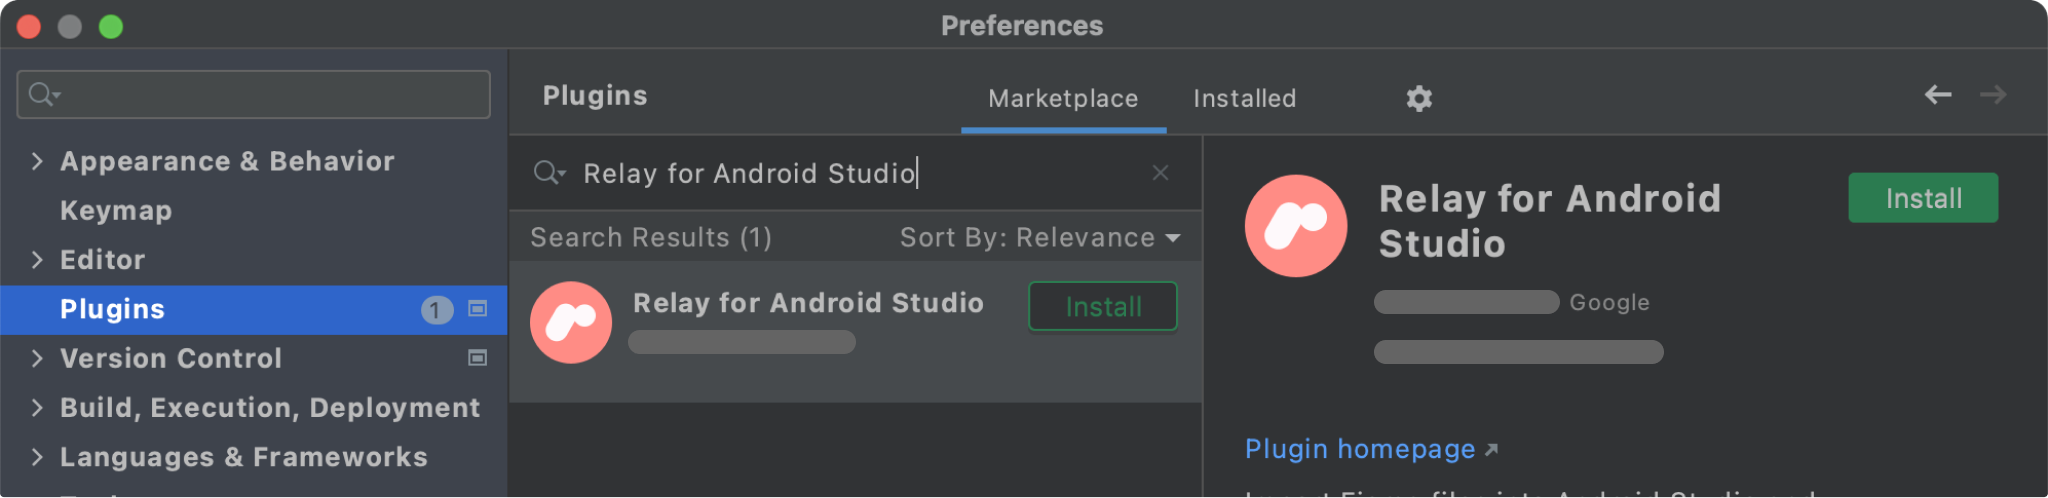 Trình Chuyển tiếp cho Android Studio trong Marketplace